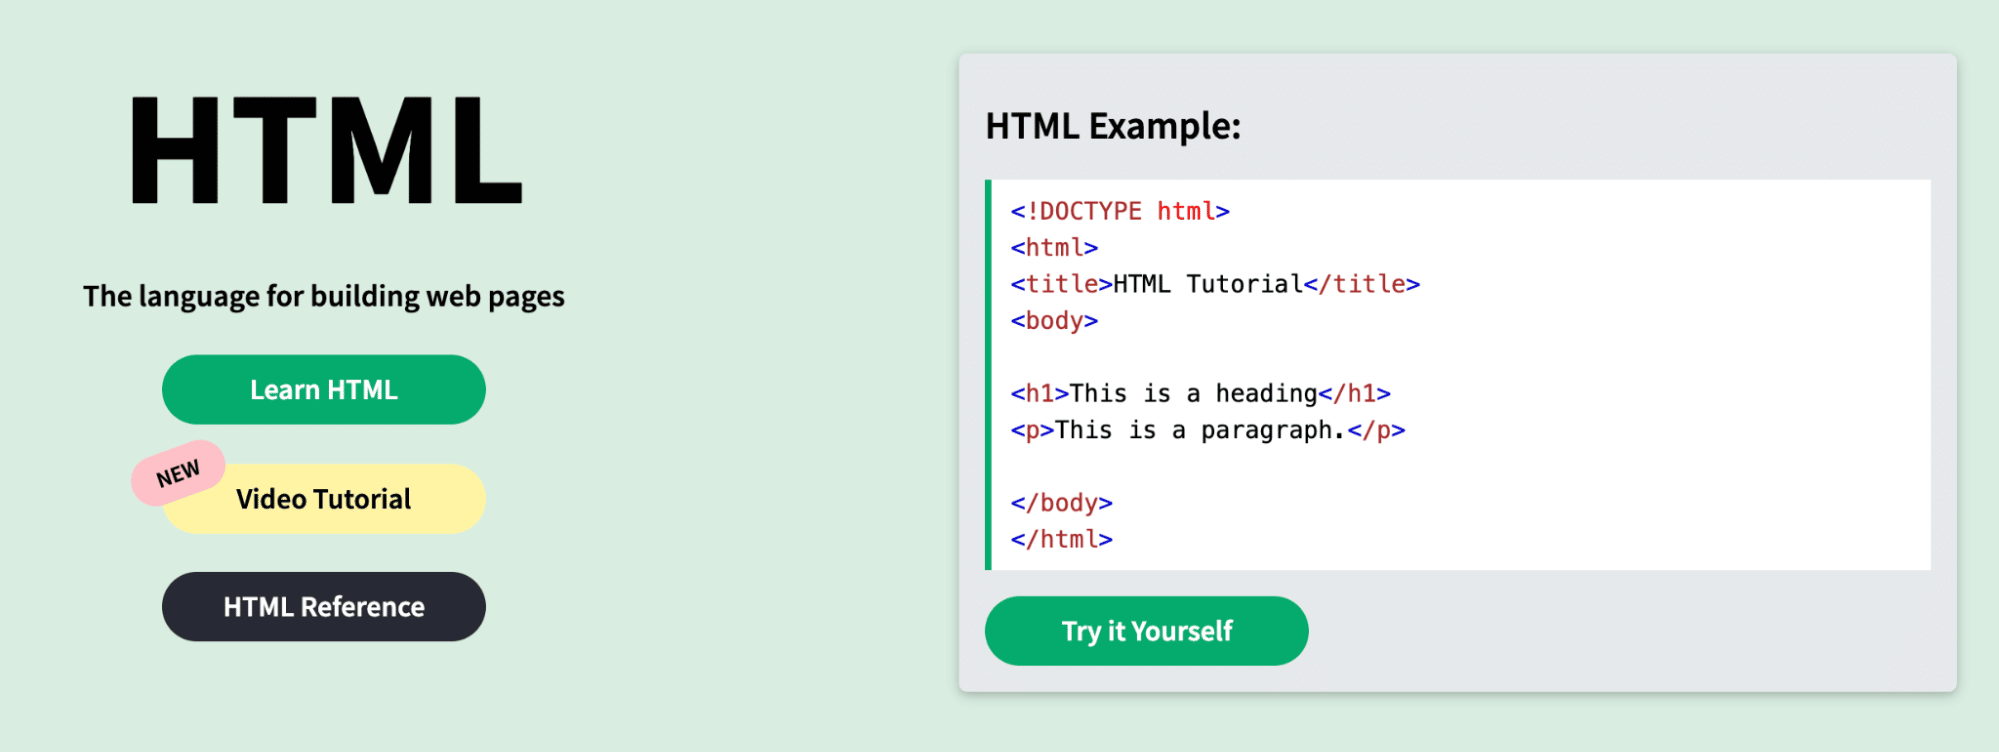 Schermata con uno snippet di esempio di codice HTML